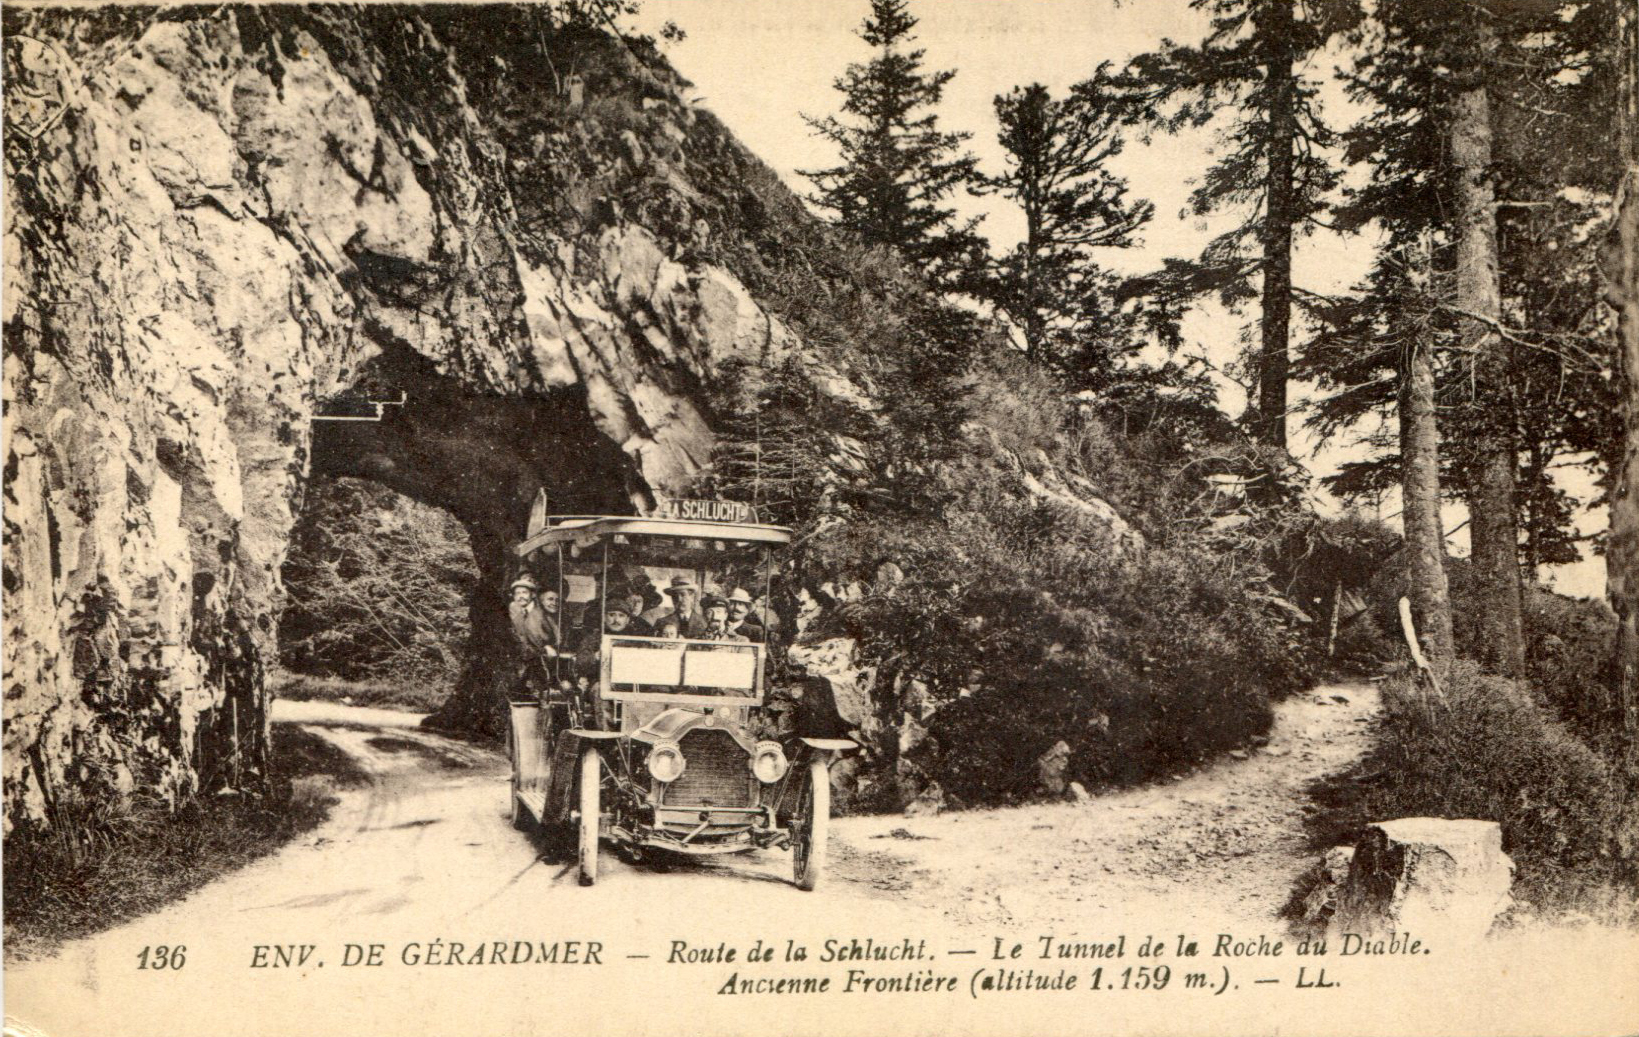 265 - Tunnel de la Roche du Diable